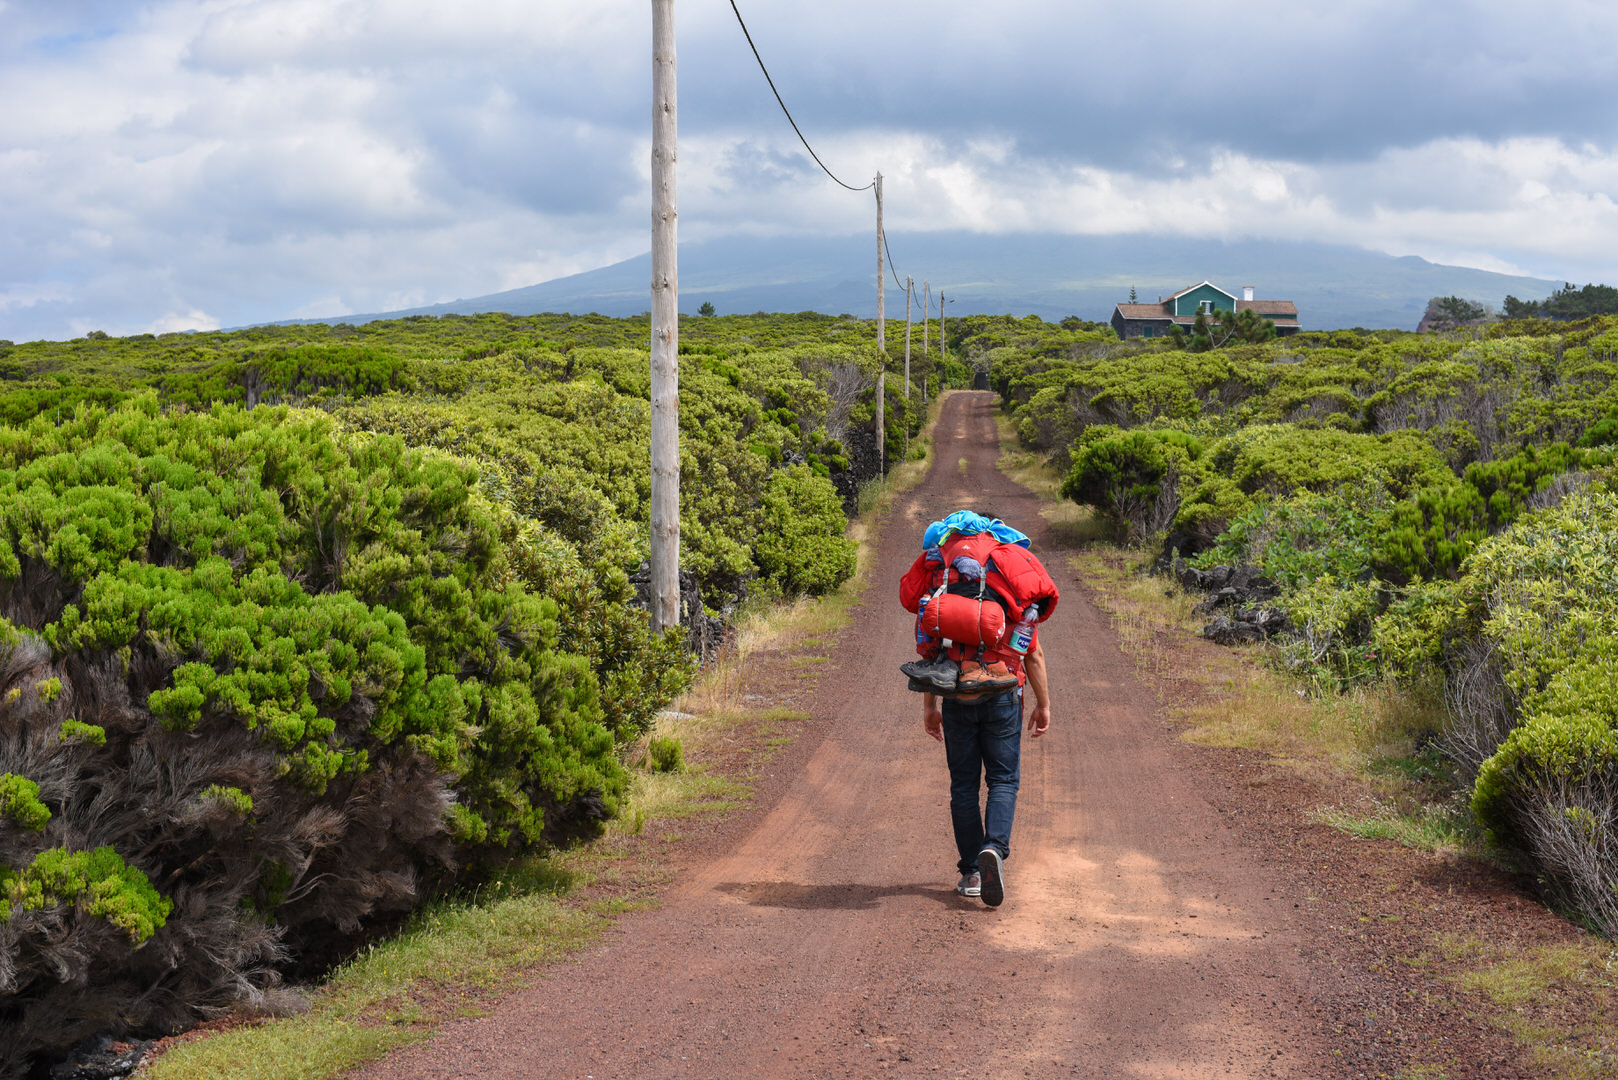 Grüne Weinreben auf der Nachbarinsel von Sao Jorge und ein Wanderer, der mit einem bepackten Rucksack unterwegs ist